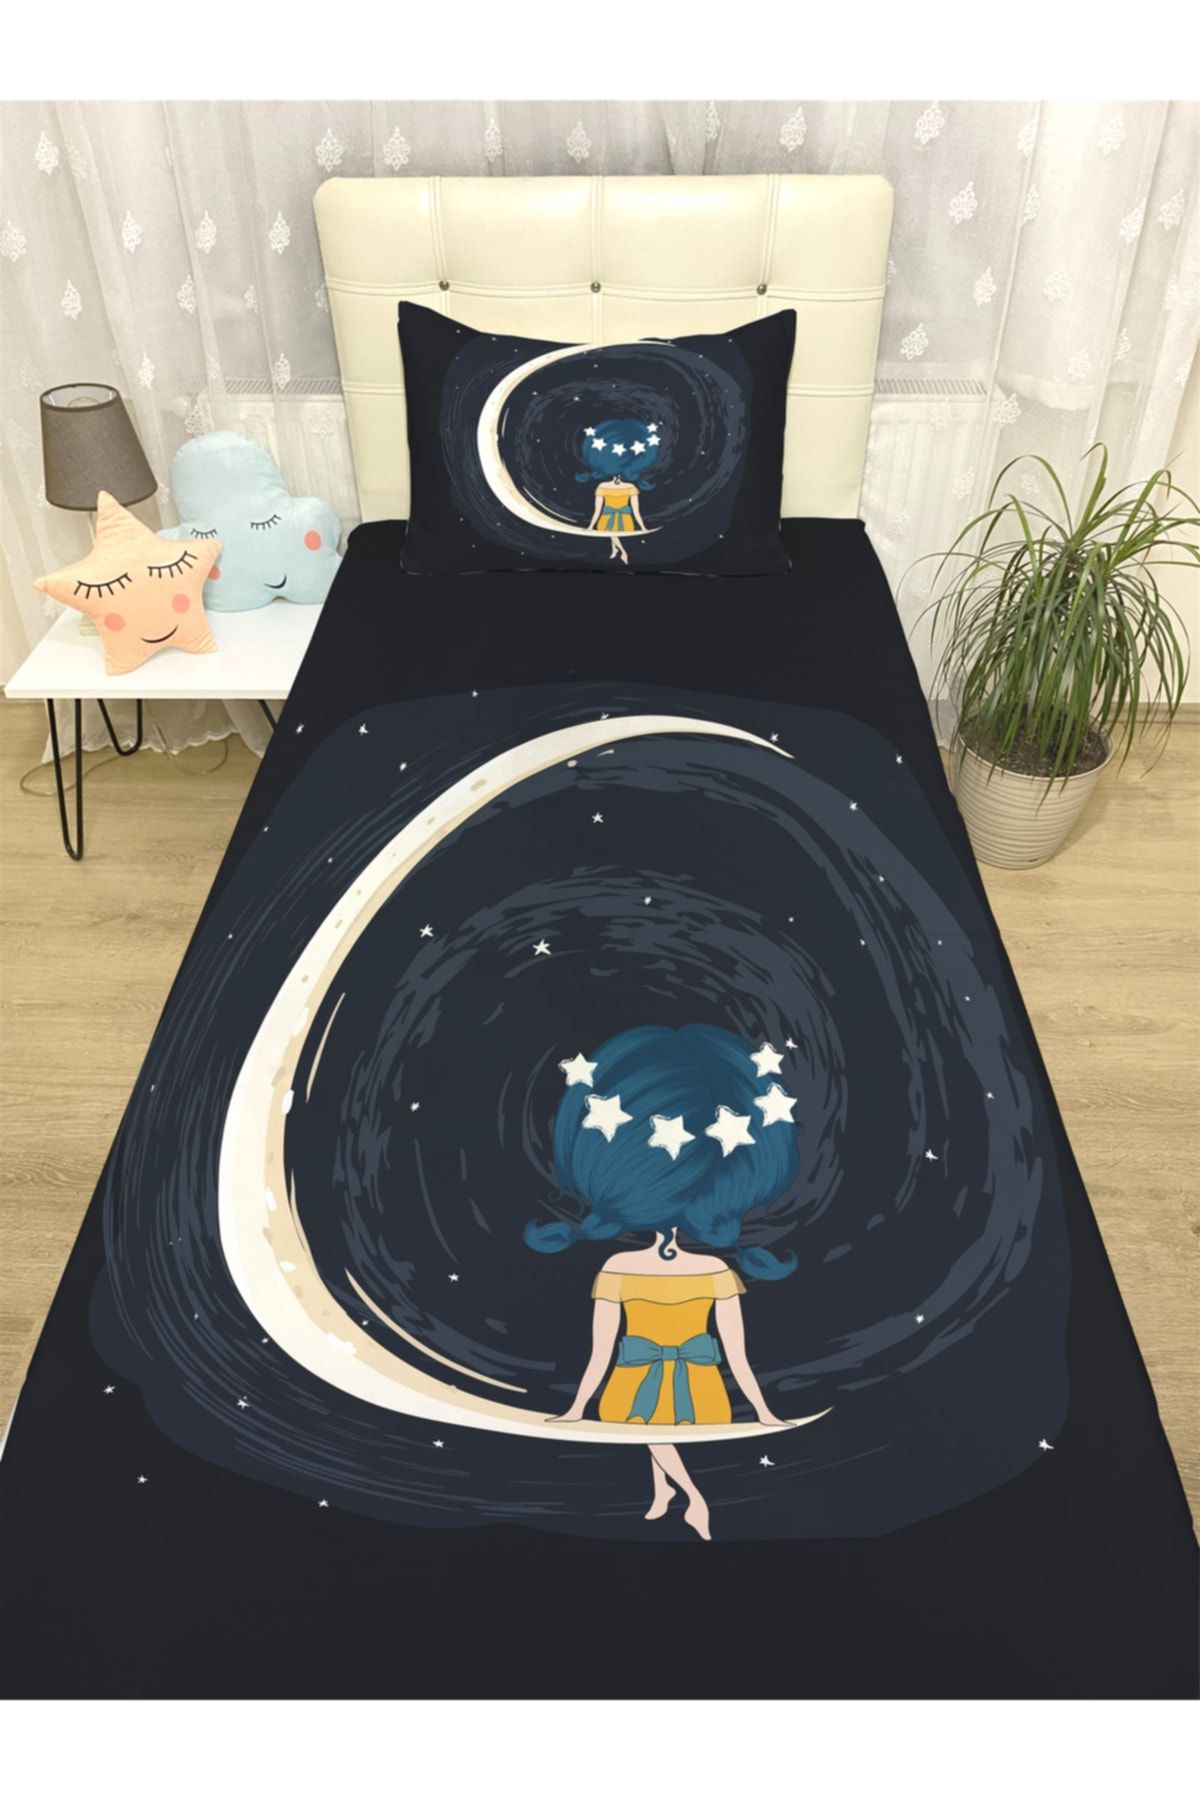 Evpanya Aydaki Yıldız Taçlı Kız Desenli Yatak Örtüsü